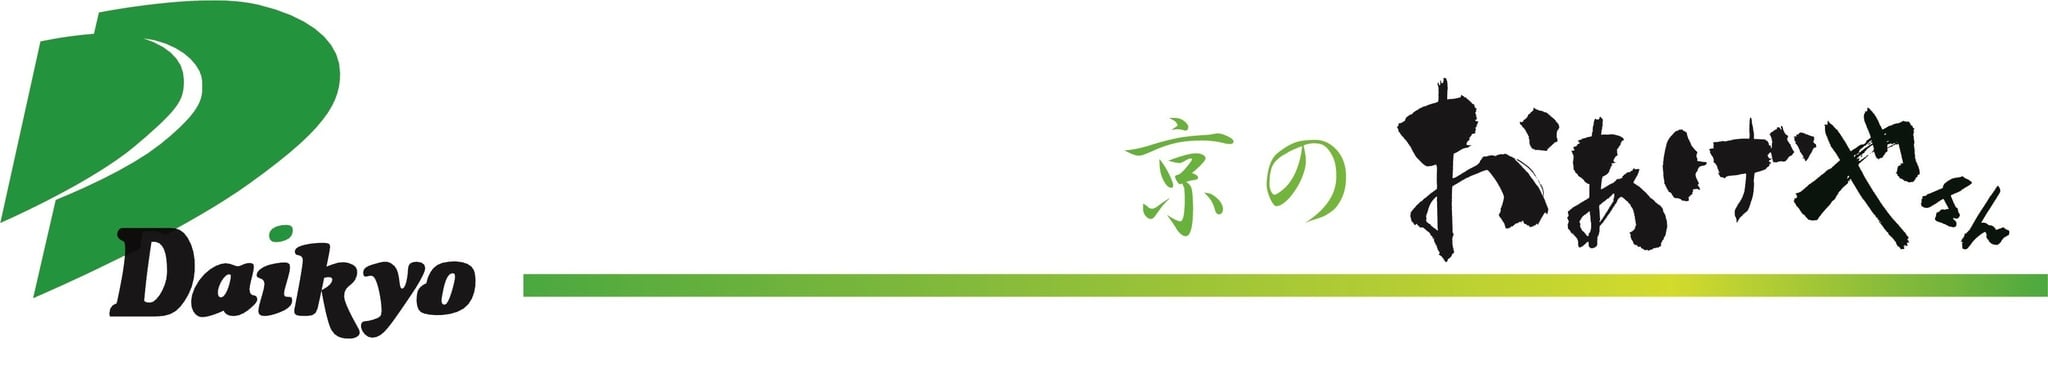 大京食品株式会社のホームページ